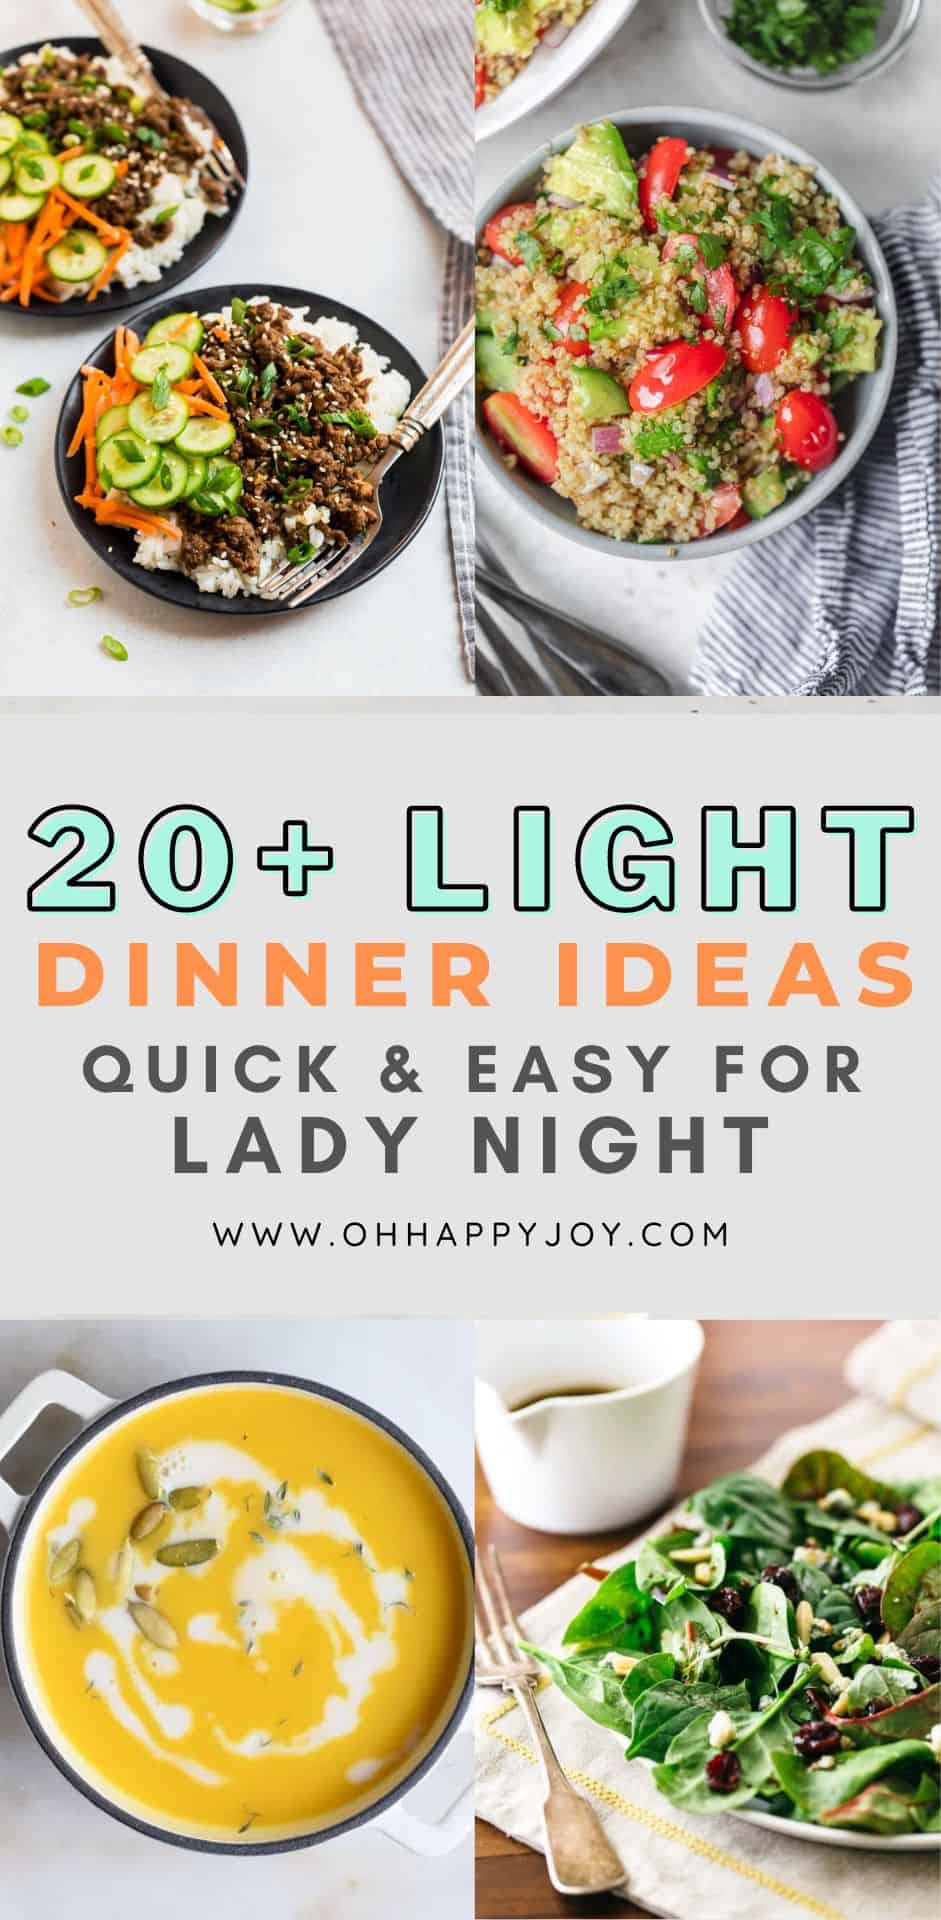 LIGHT DINNER IDEAS